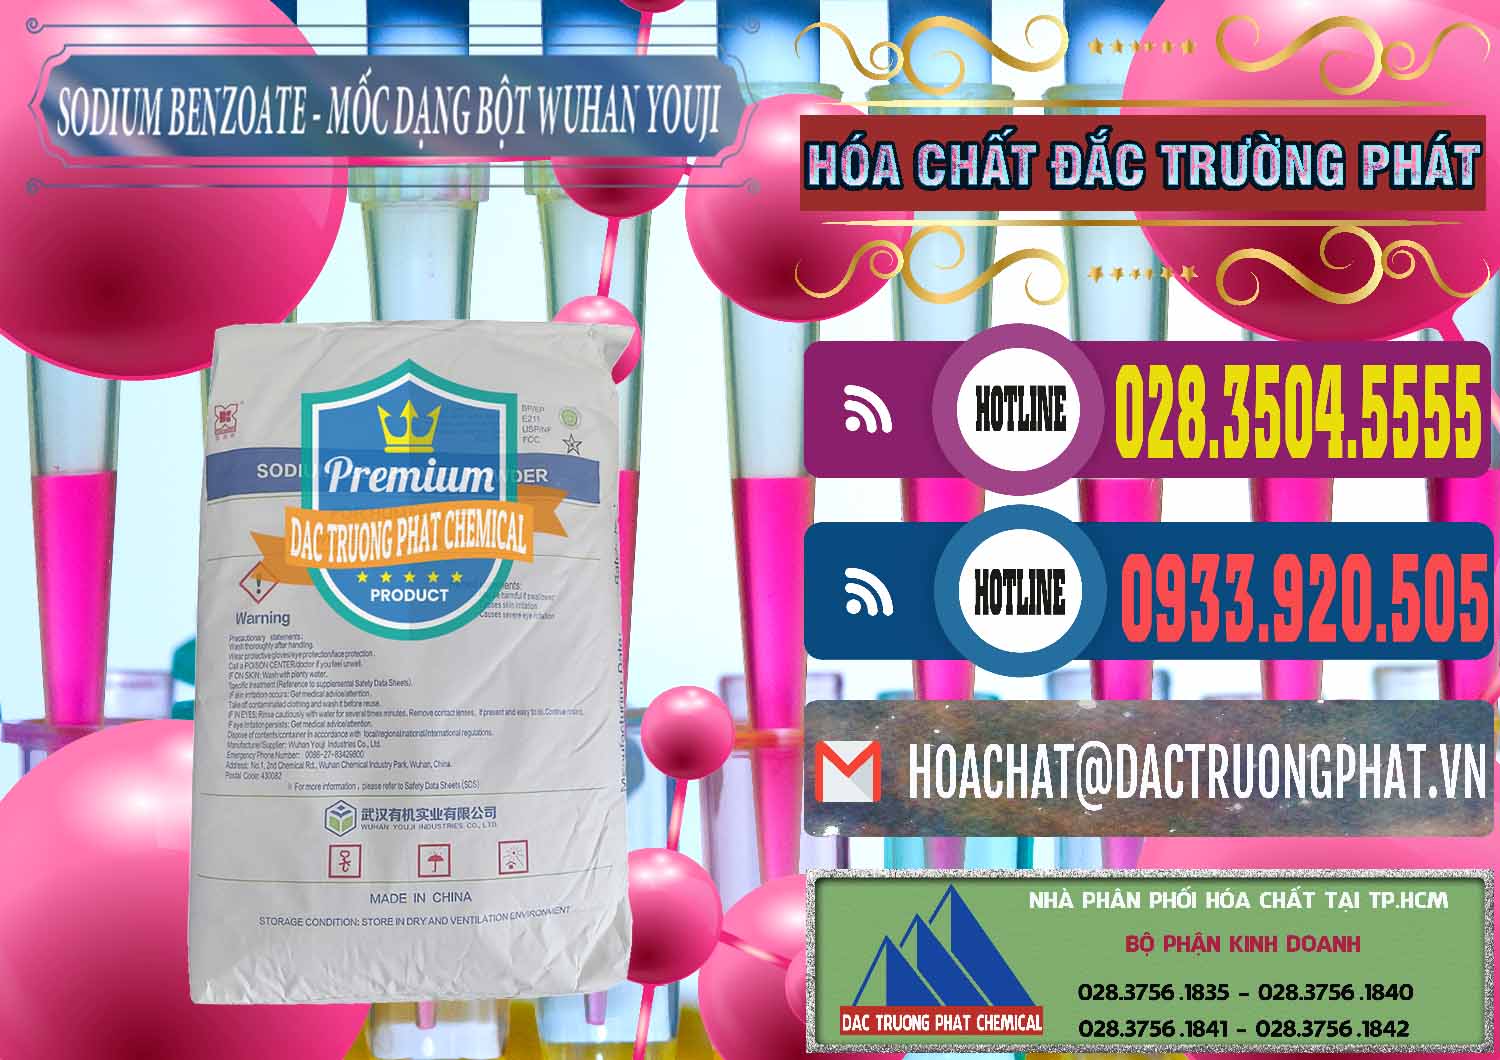 Chuyên kinh doanh và bán Sodium Benzoate - Mốc Dạng Bột Food Grade Wuhan Youji Trung Quốc China - 0275 - Phân phối _ cung cấp hóa chất tại TP.HCM - muabanhoachat.com.vn